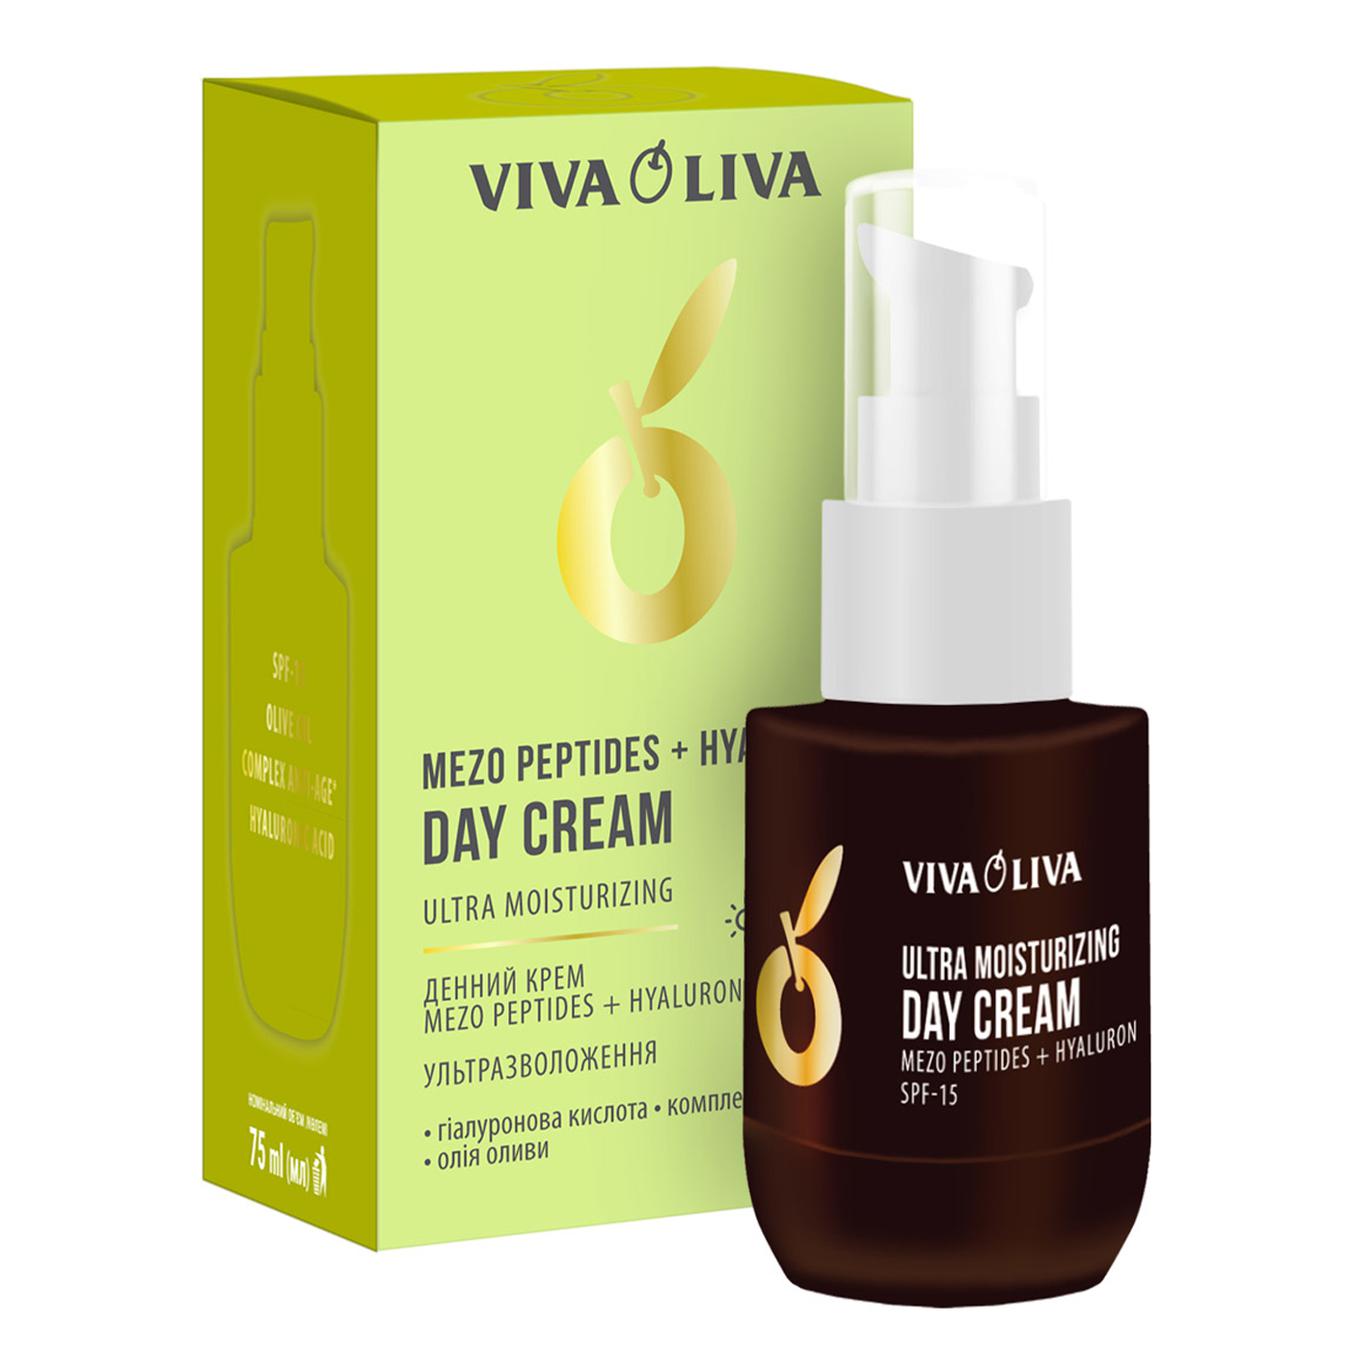 Day cream Viva oliva mezo peptides+hyaluron ultra moisturizing SPF-15 75ml